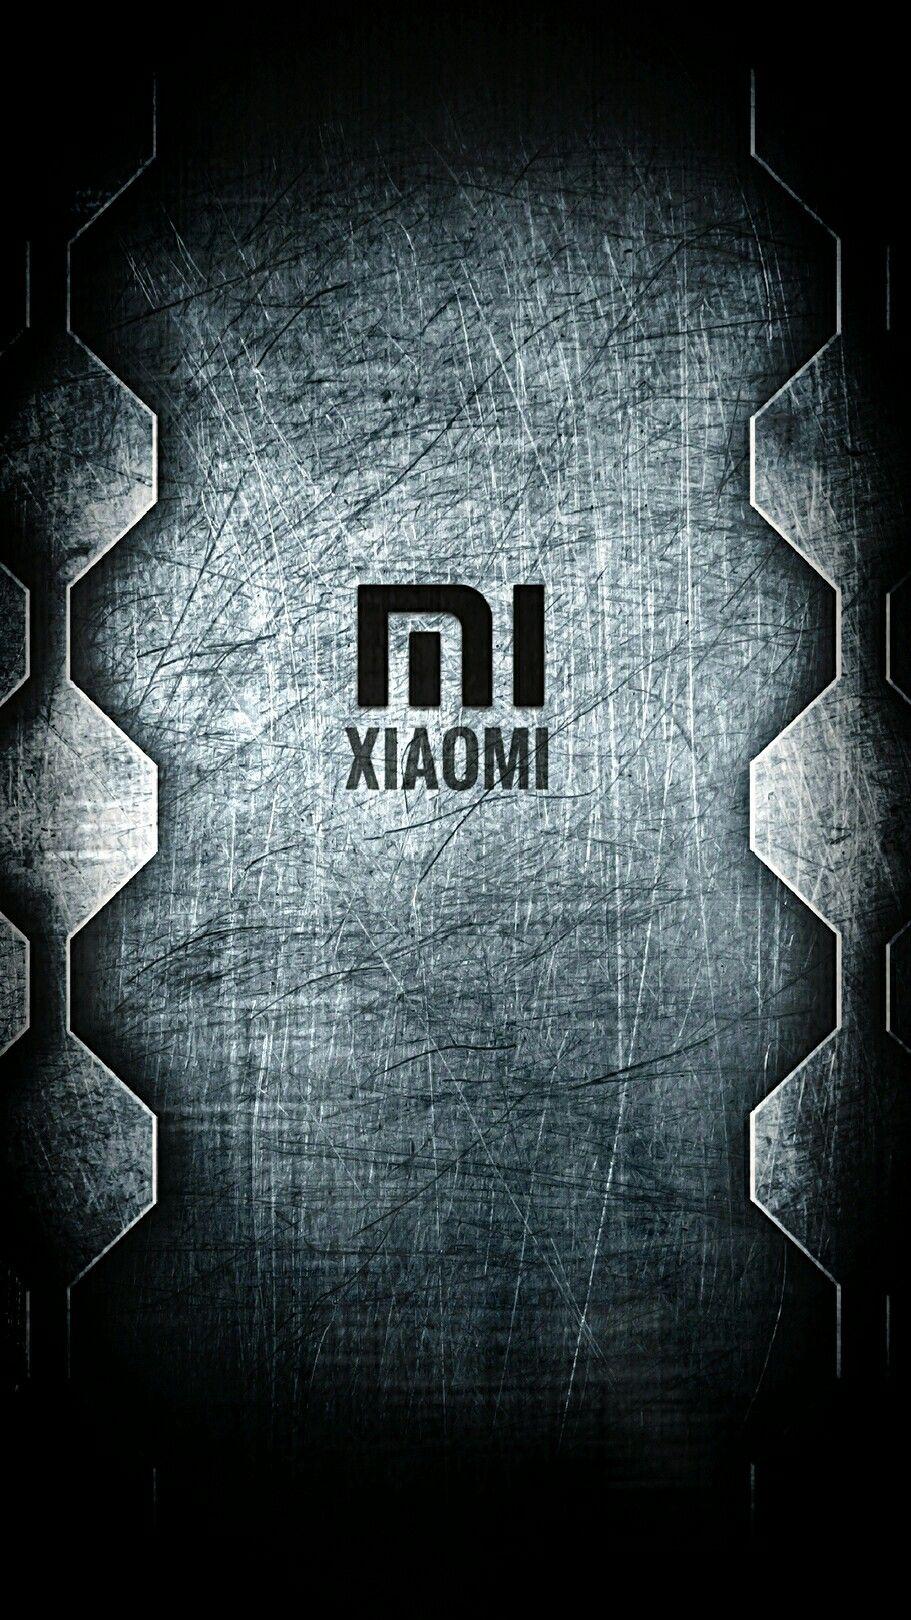 Xiaomi: Xiaomi là thương hiệu điện thoại thông minh hàng đầu của Trung Quốc và được yêu thích trên toàn thế giới với thiết kế đẹp và hiệu năng ấn tượng. Chọn Xiaomi để tận hưởng trải nghiệm di động hoàn hảo, từ chụp ảnh đến chơi game, đủ để đáp ứng mọi nhu cầu của bạn. Hãy xem hình ảnh liên quan để khám phá thêm các sản phẩm và tính năng tuyệt vời của Xiaomi.